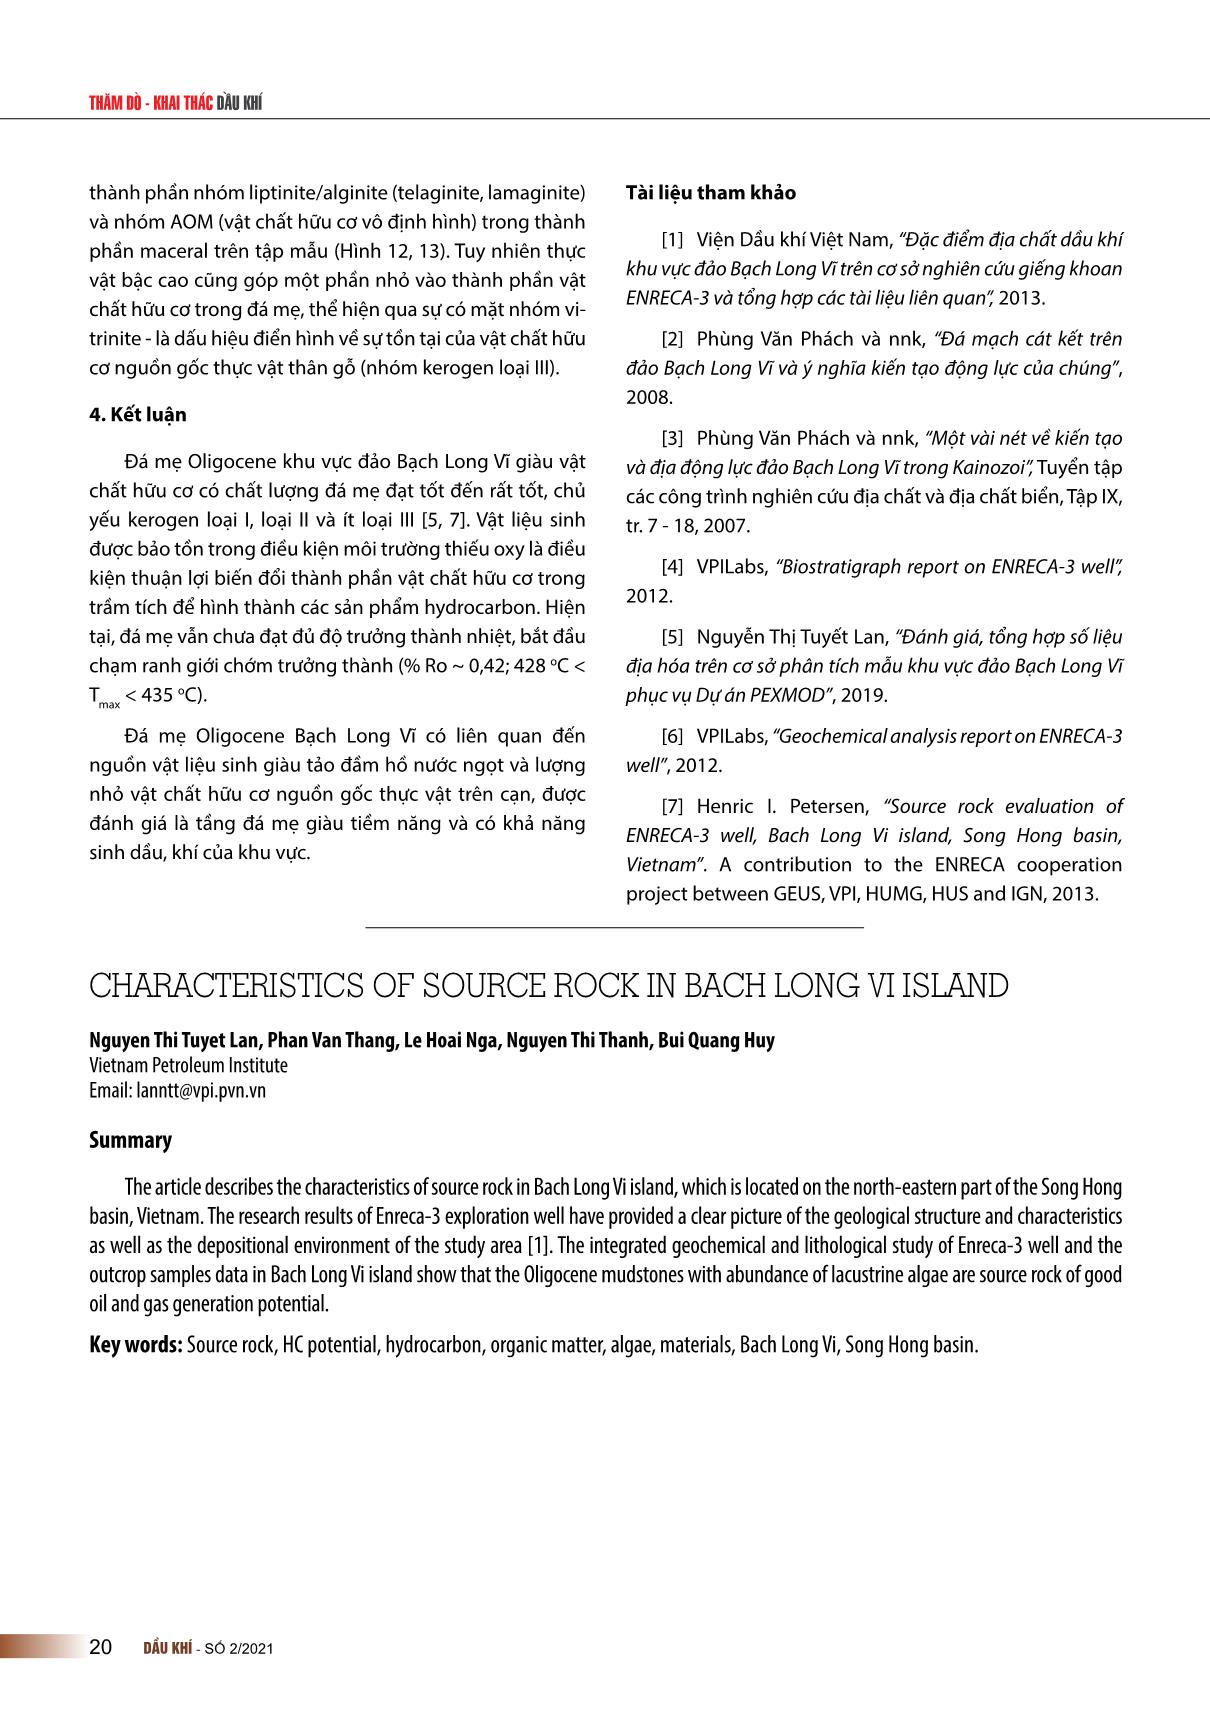 Đặc điểm đá mẹ khu vực đảo Bạch Long Vĩ trang 5